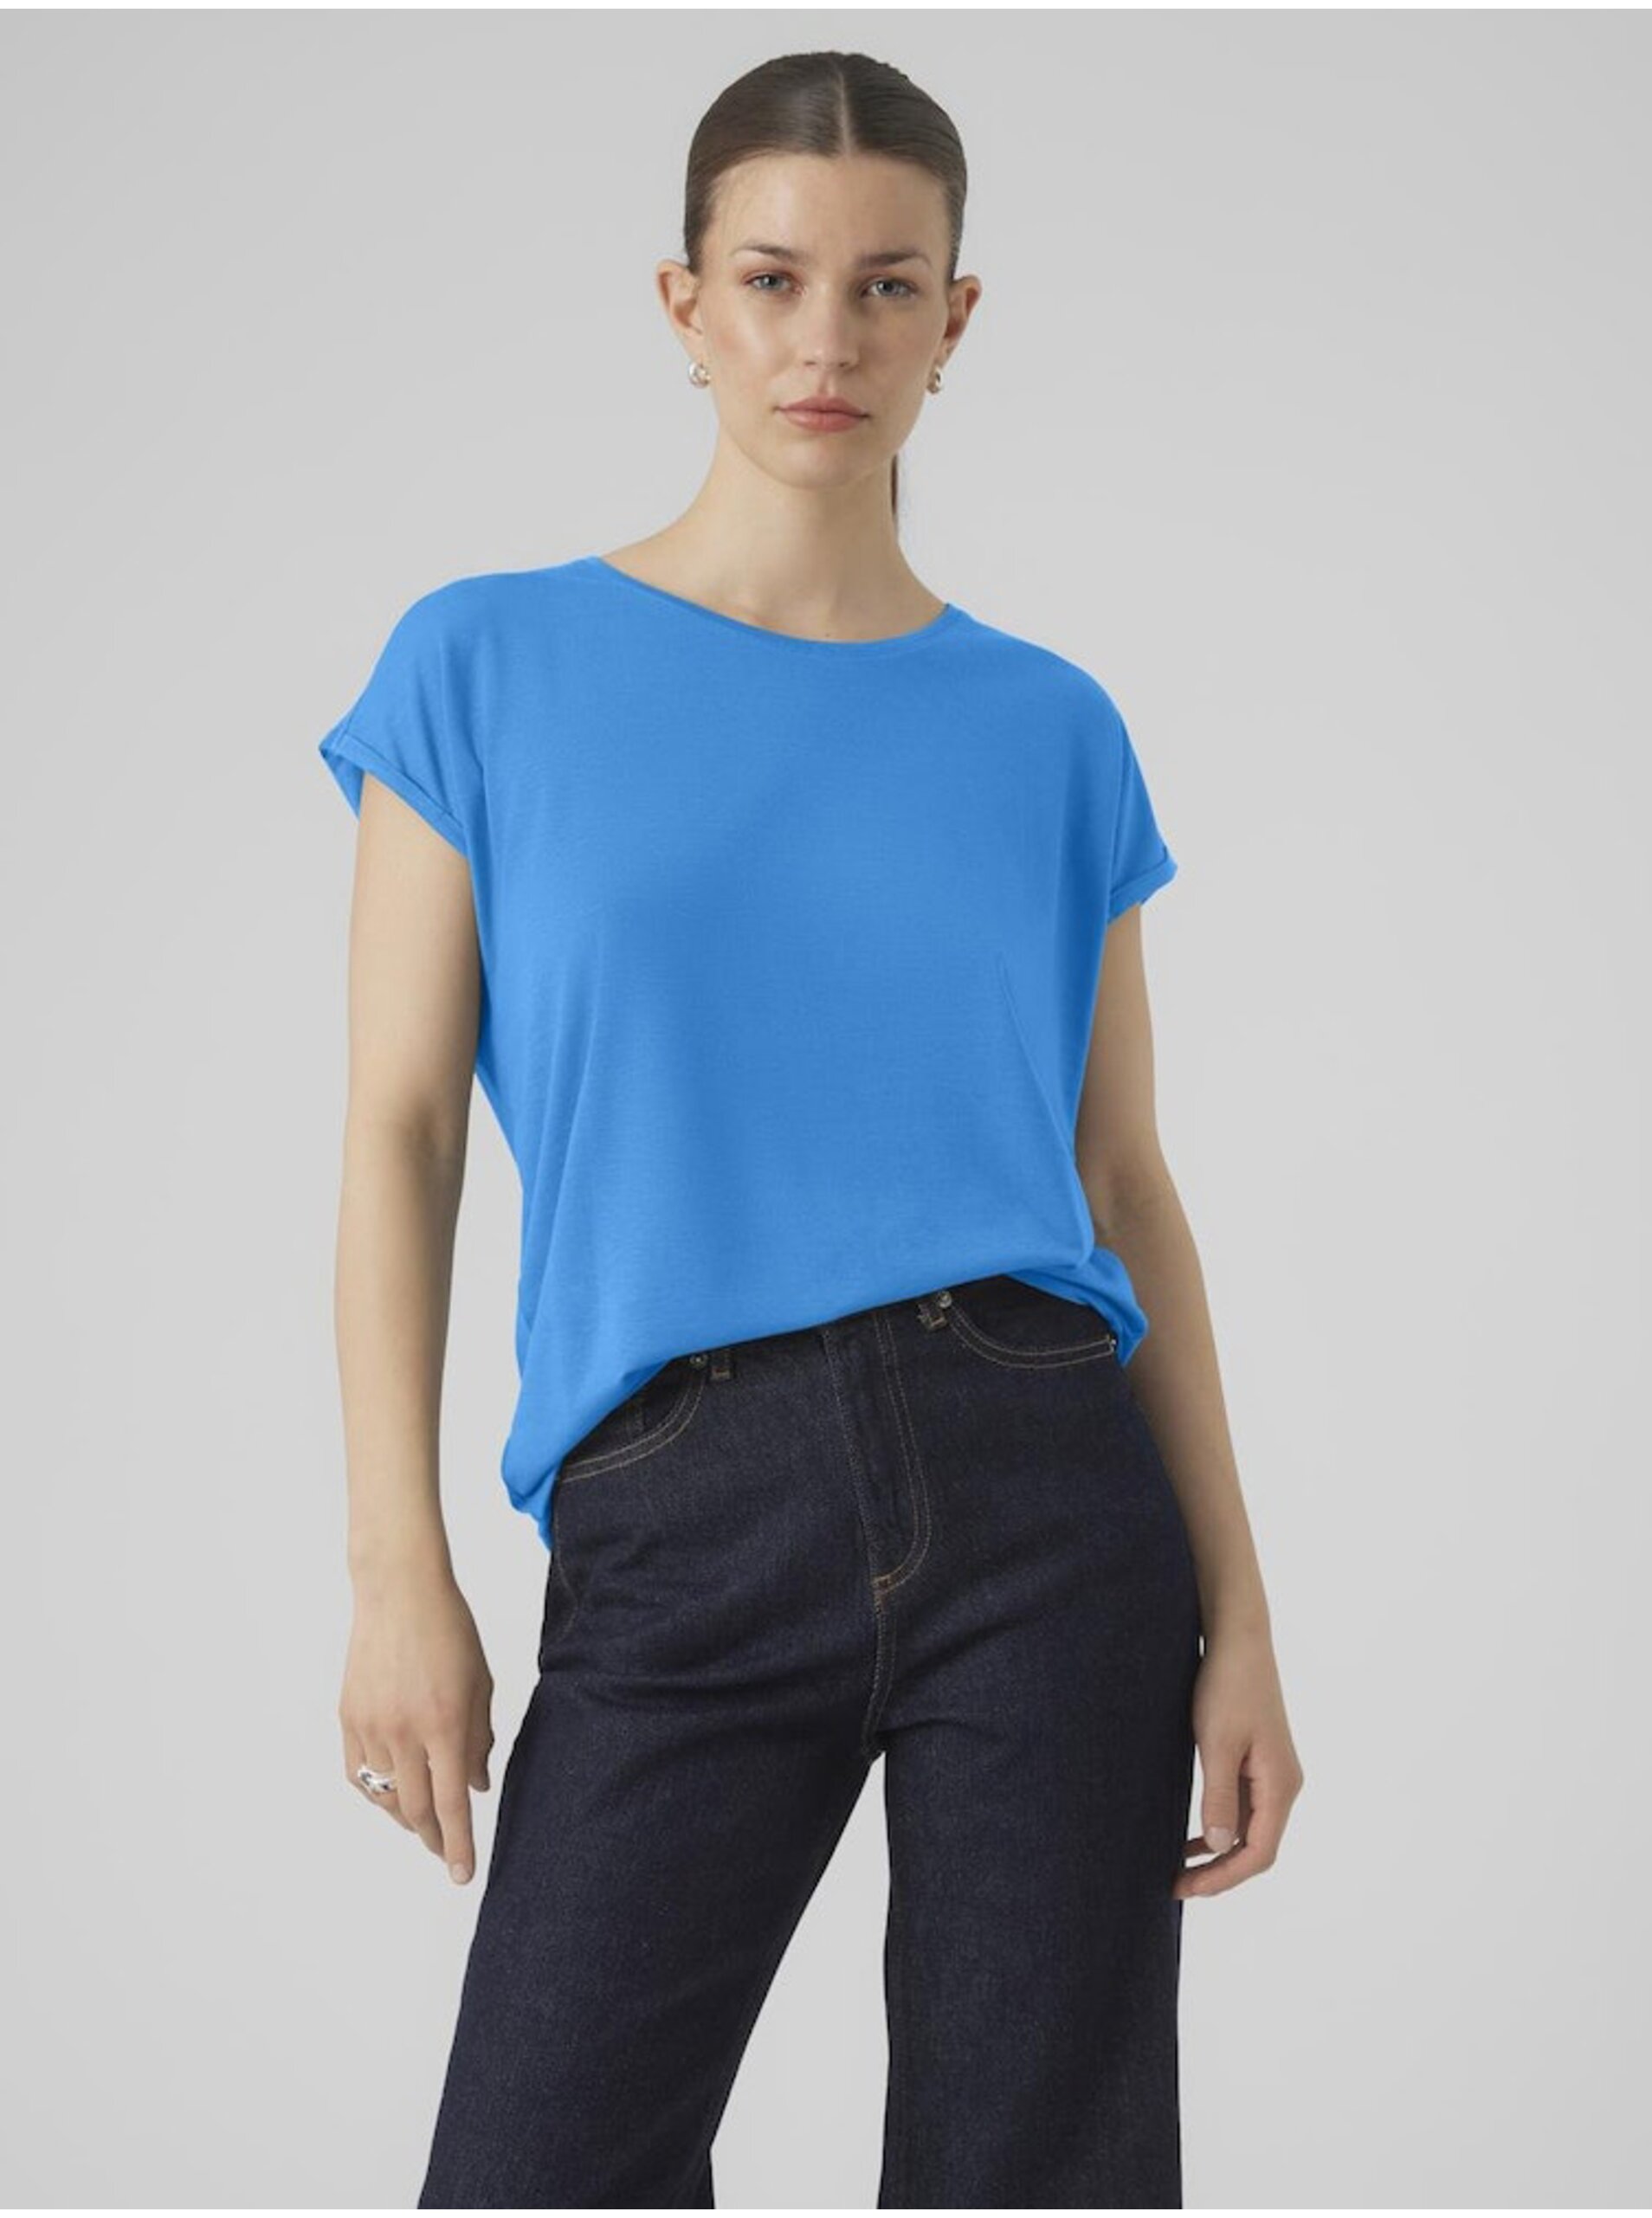 Lacno Modré dámske tričko Vero Moda Ava